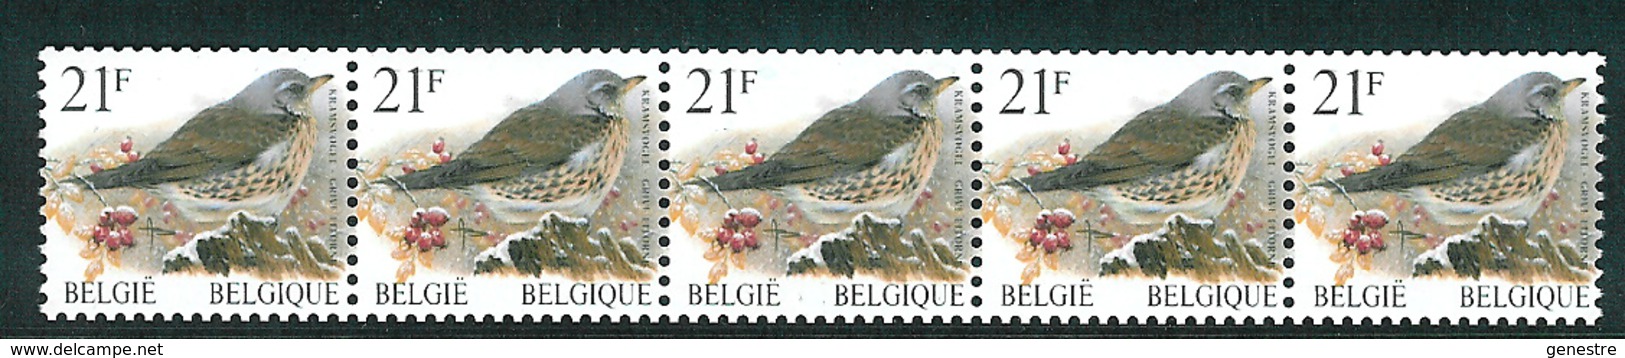 Belgique COB 2792 / R89 ** (MNH) - Valeur Faciale - Rouleaux